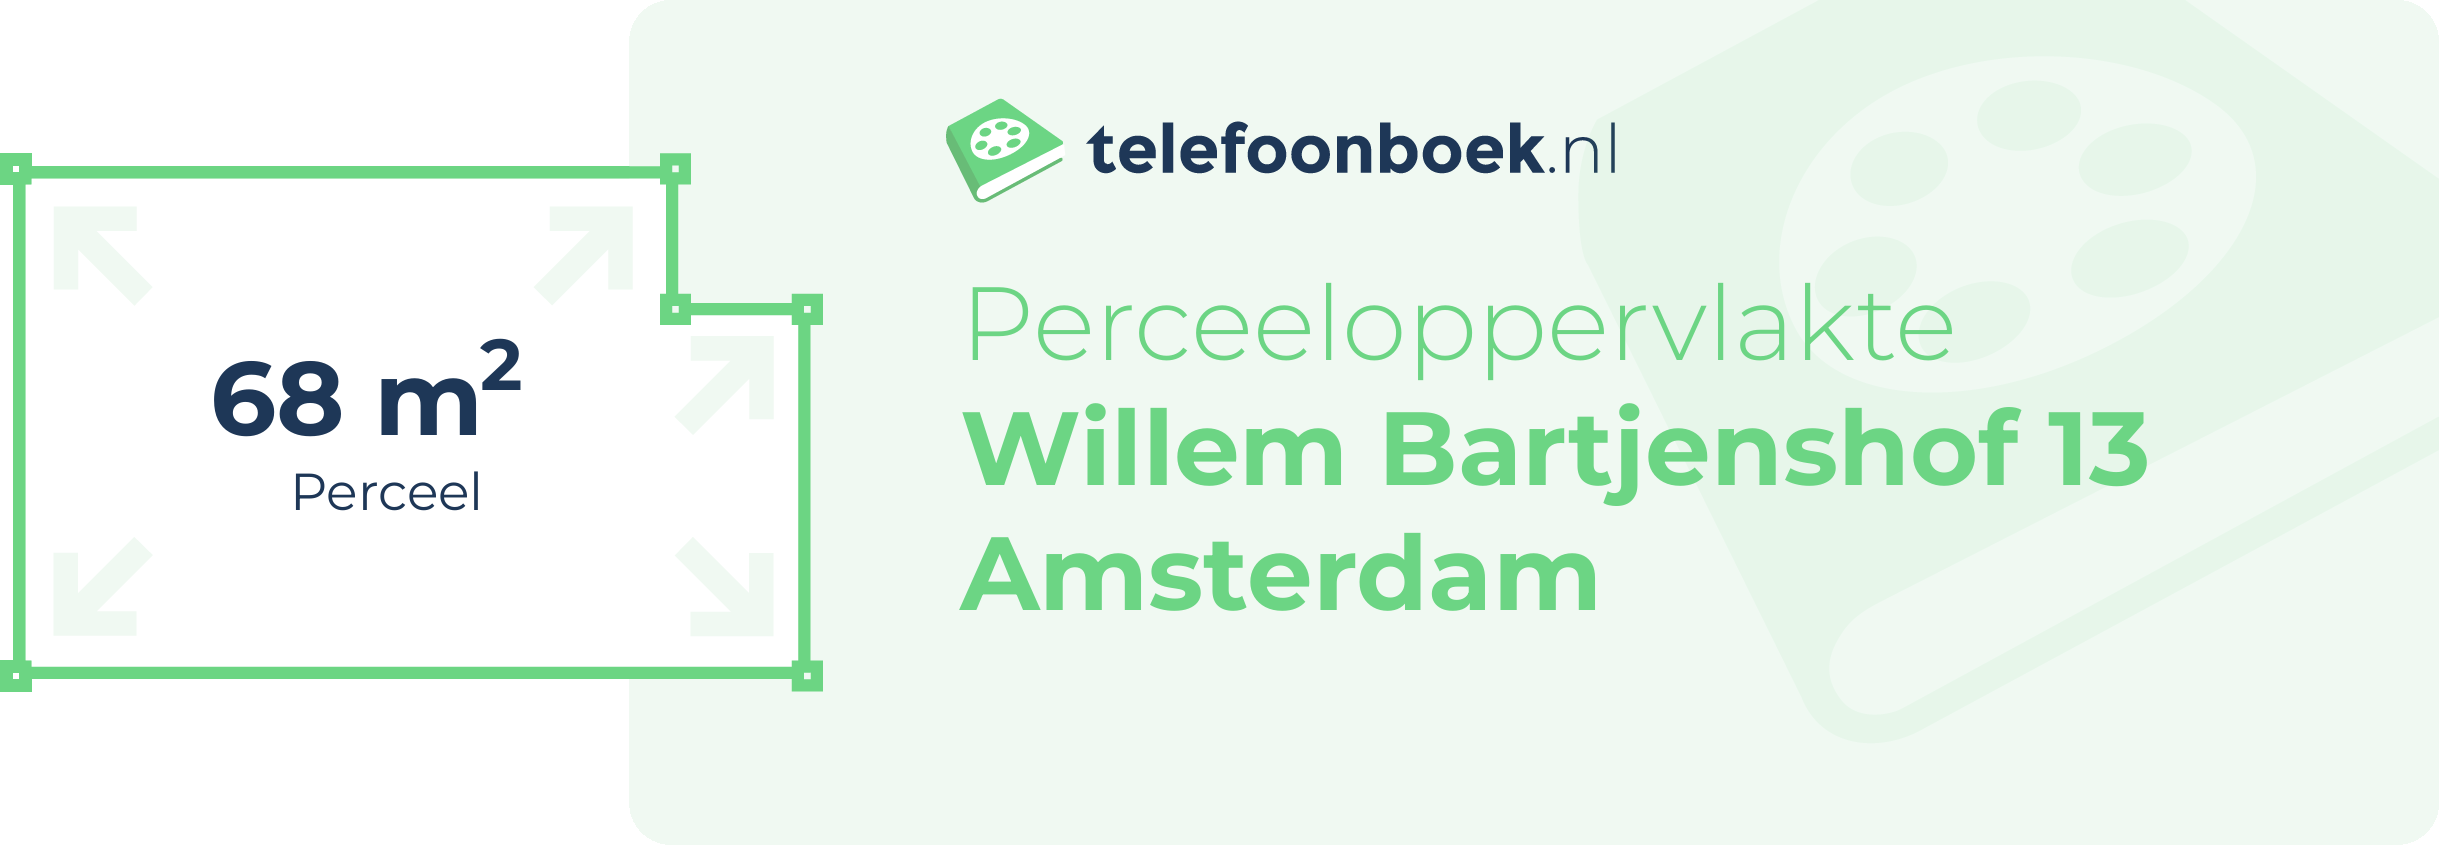 Perceeloppervlakte Willem Bartjenshof 13 Amsterdam